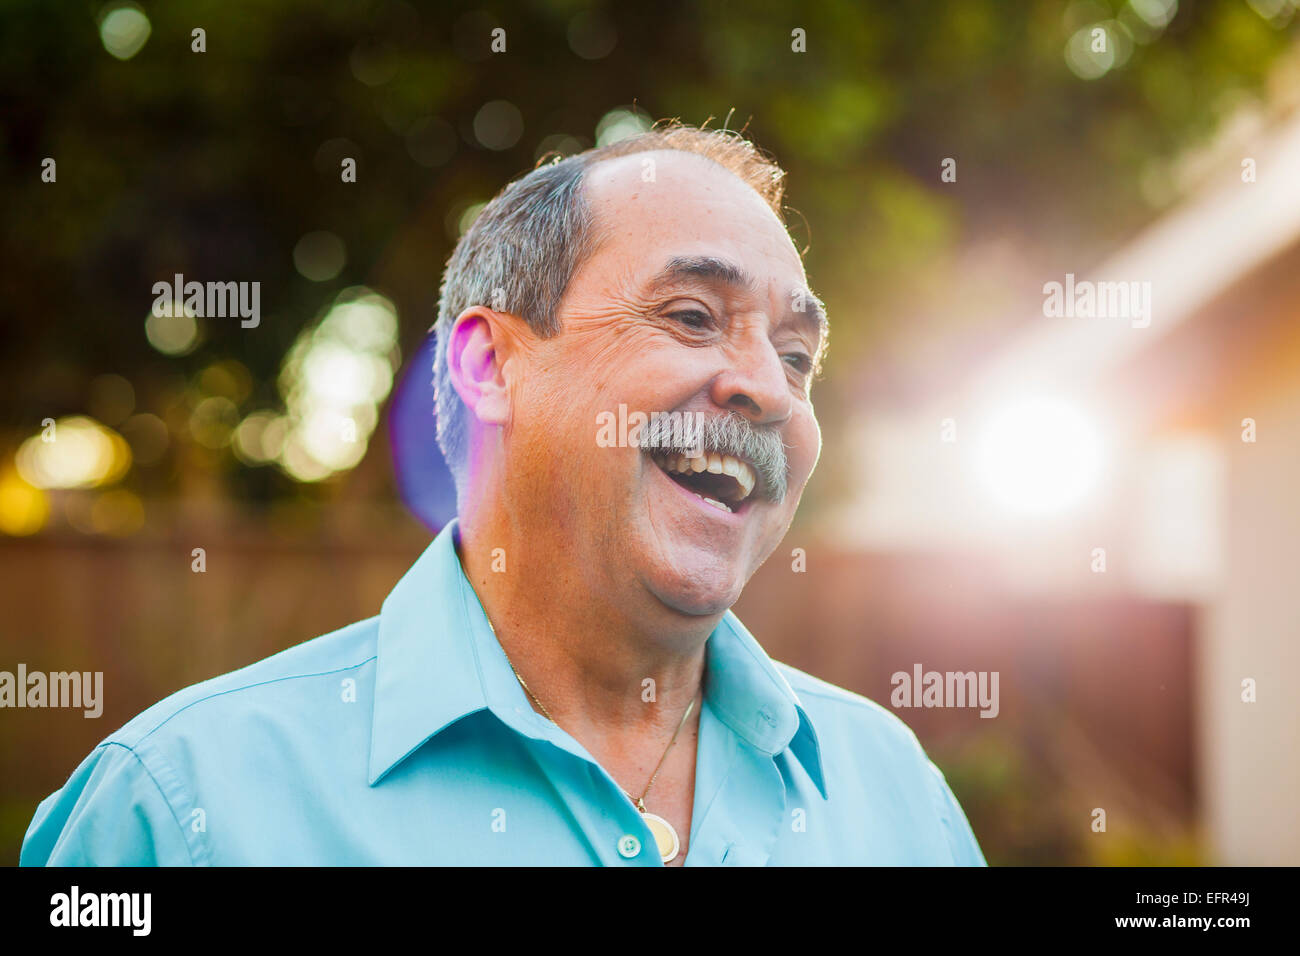 Porträt des älteren Menschen mit breiten Lächeln Stockfoto